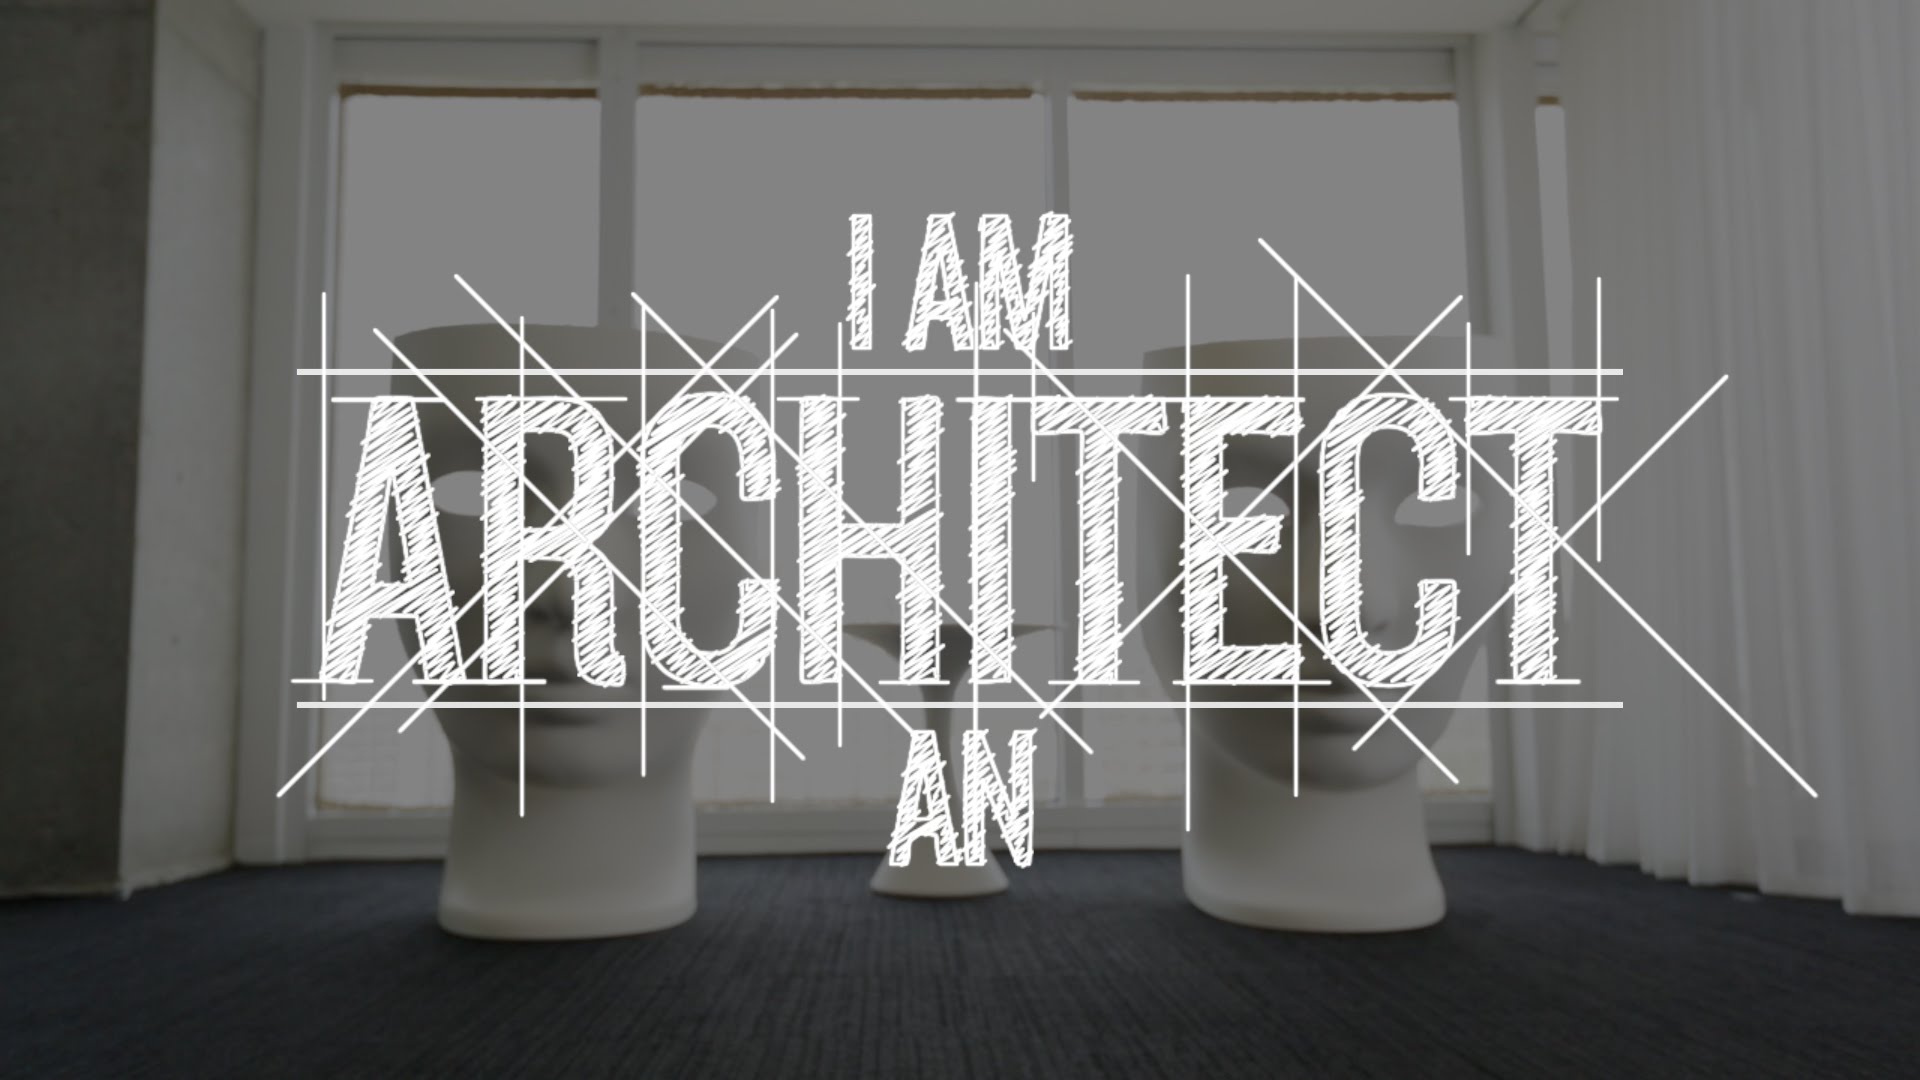 Architecture text. Architecture надпись. Архитектор надпись. Архитектура слово. Надпись Архитектор красивая.